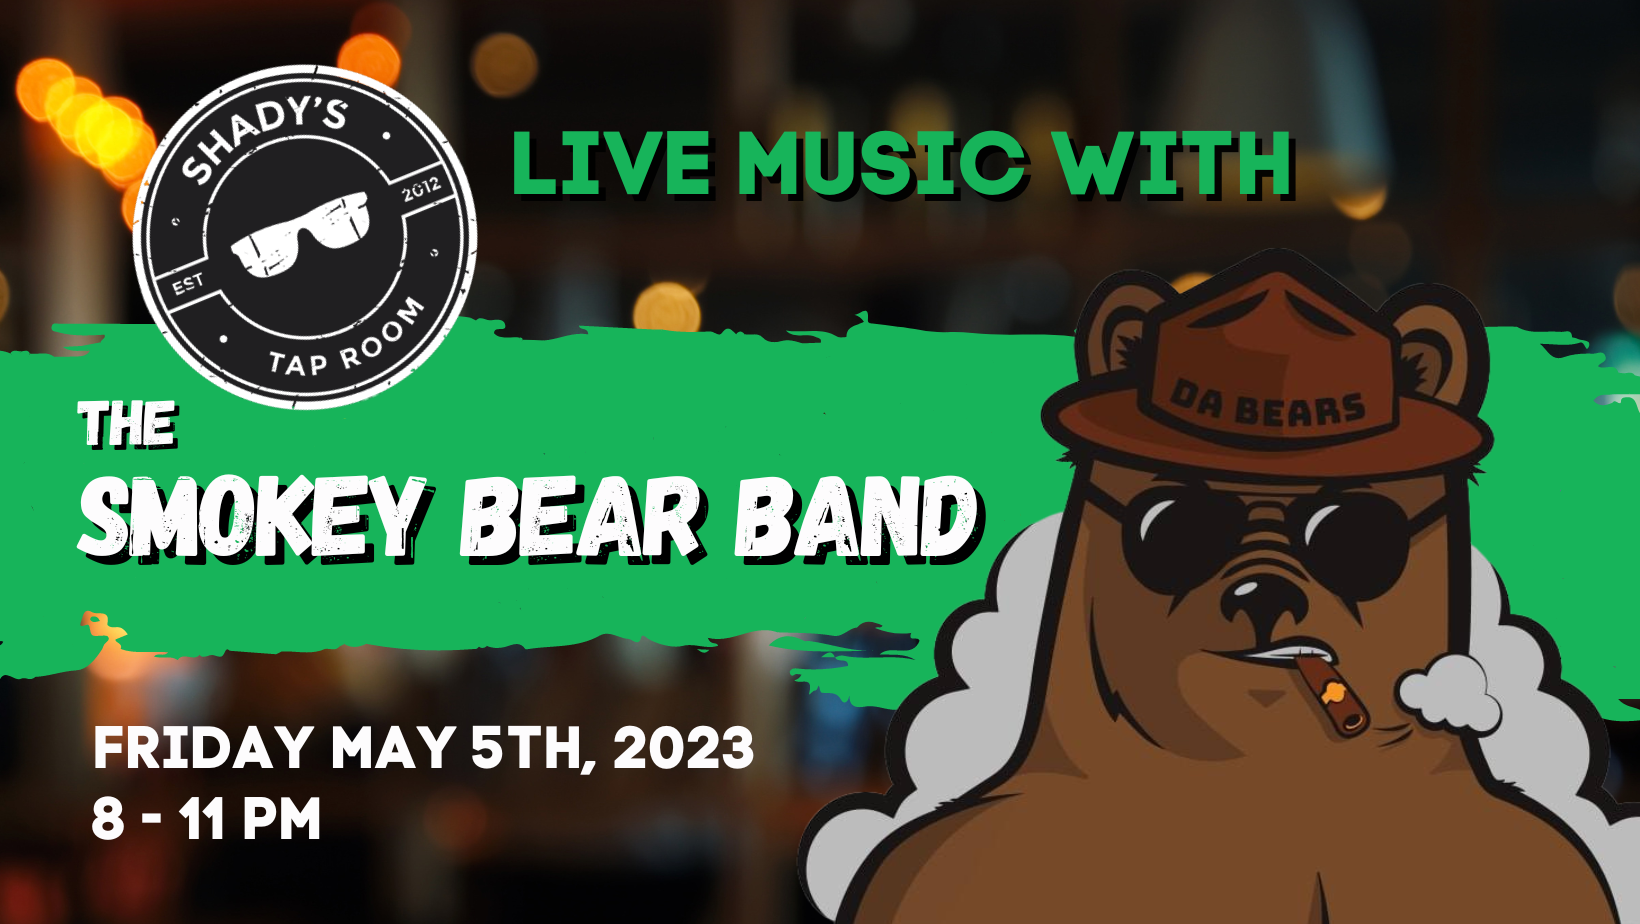 Smokey Bear Band at Shady's tap Room